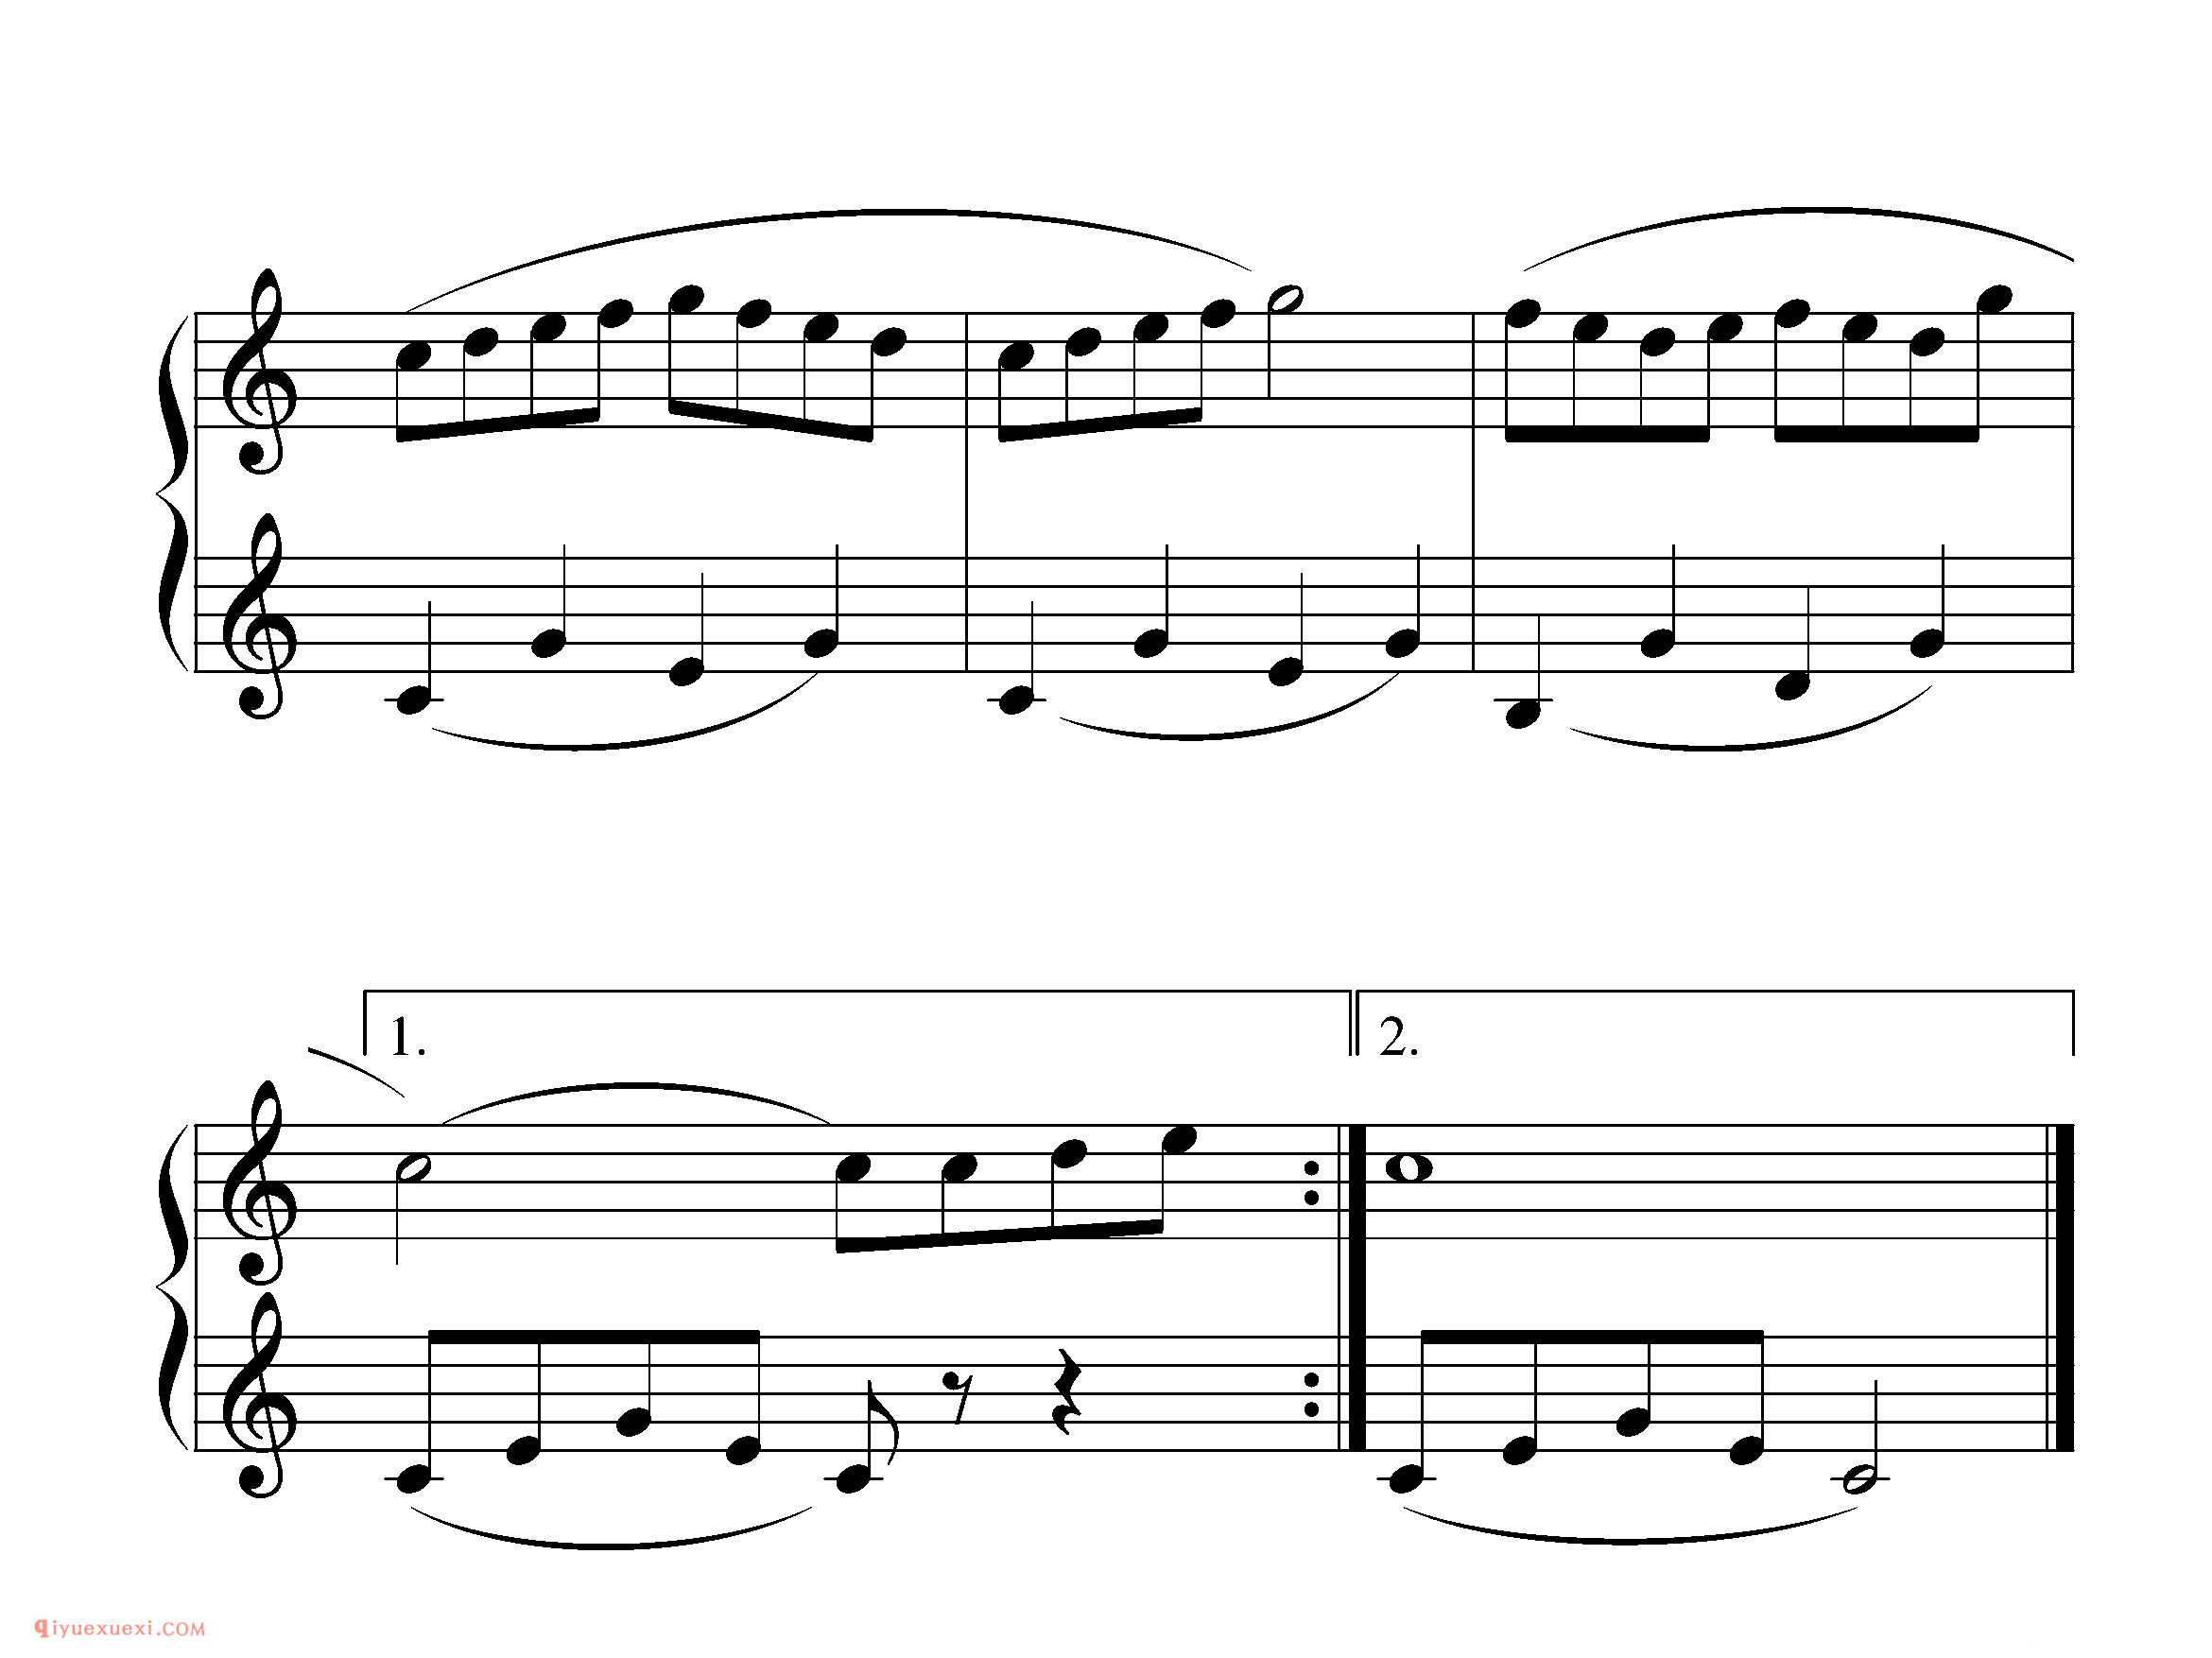 拜厄钢琴练习曲NO.46_拜尔(拜厄)钢琴基本教程练习曲第46首_五线谱